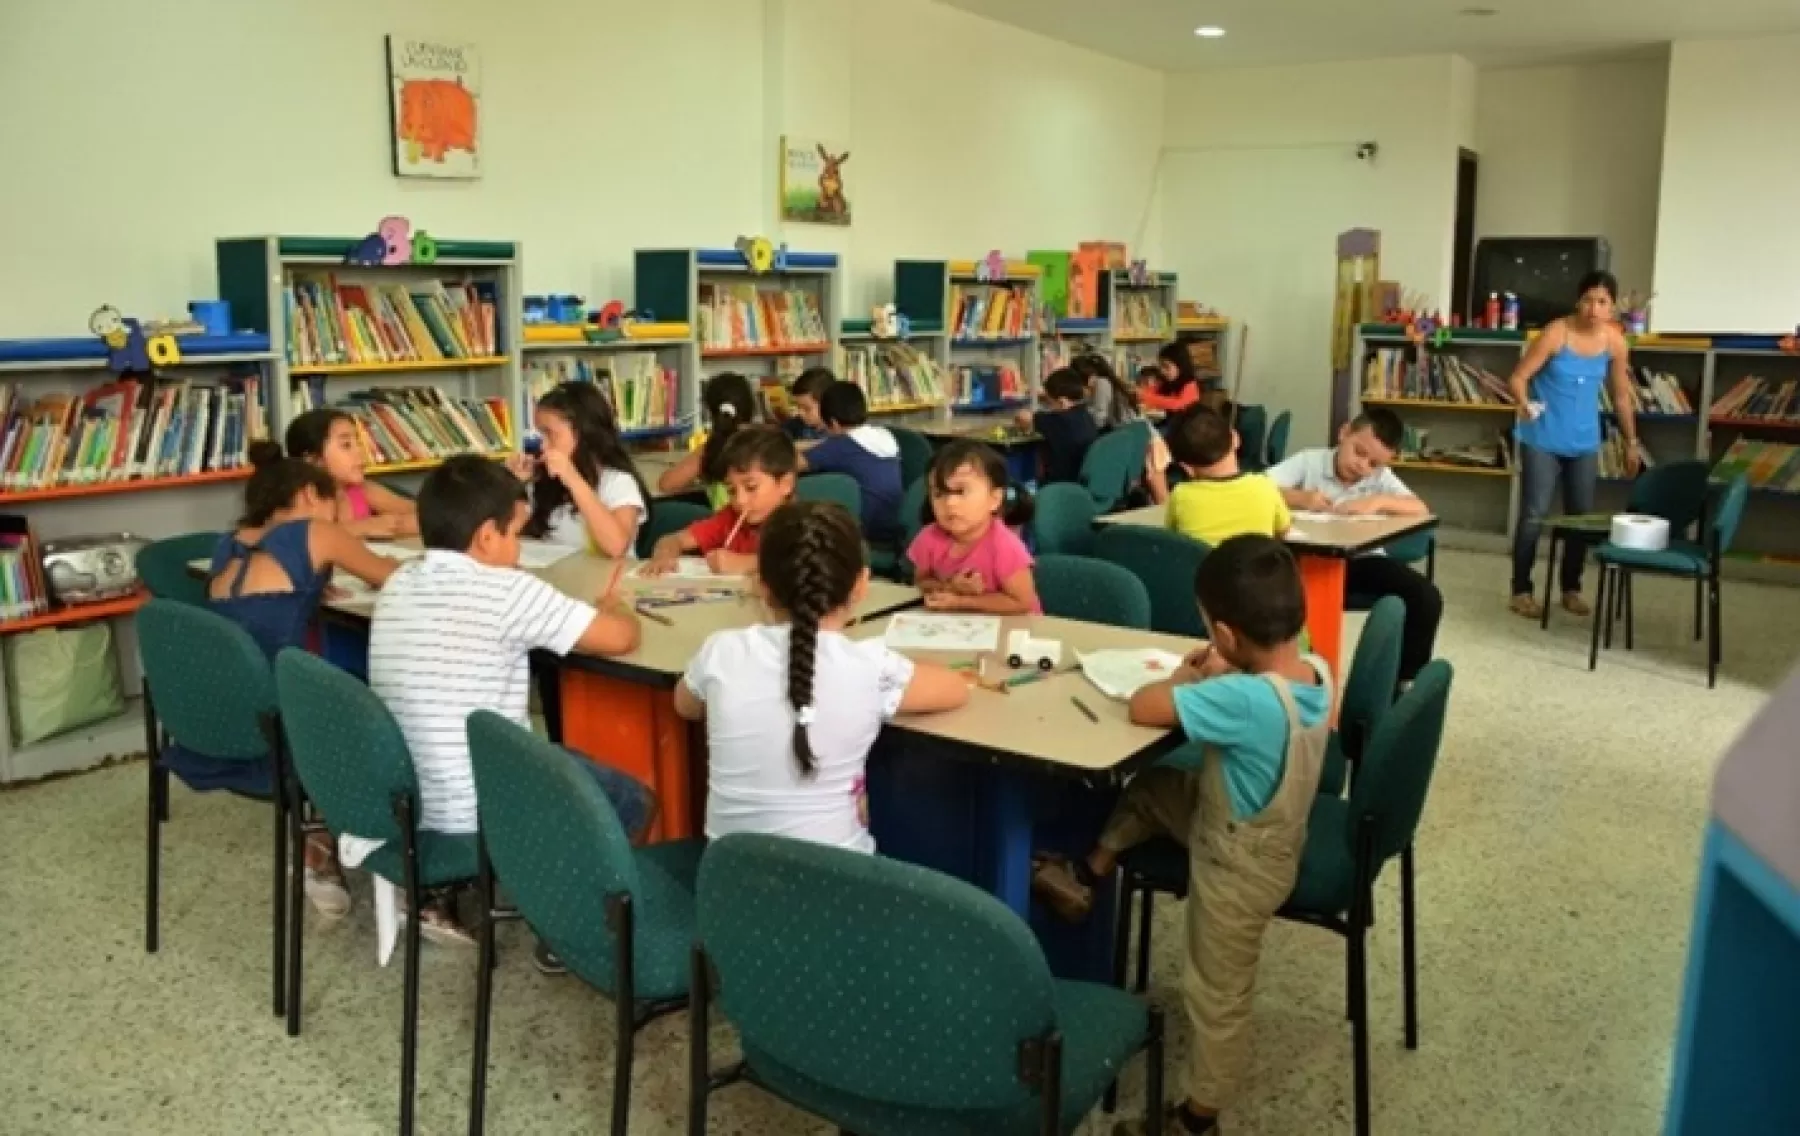 Actividades de manualidades y promoción de lectura se desarrollan en la sala de lectura infantil de la biblioteca Germán Arciniegas de Villavicencio.